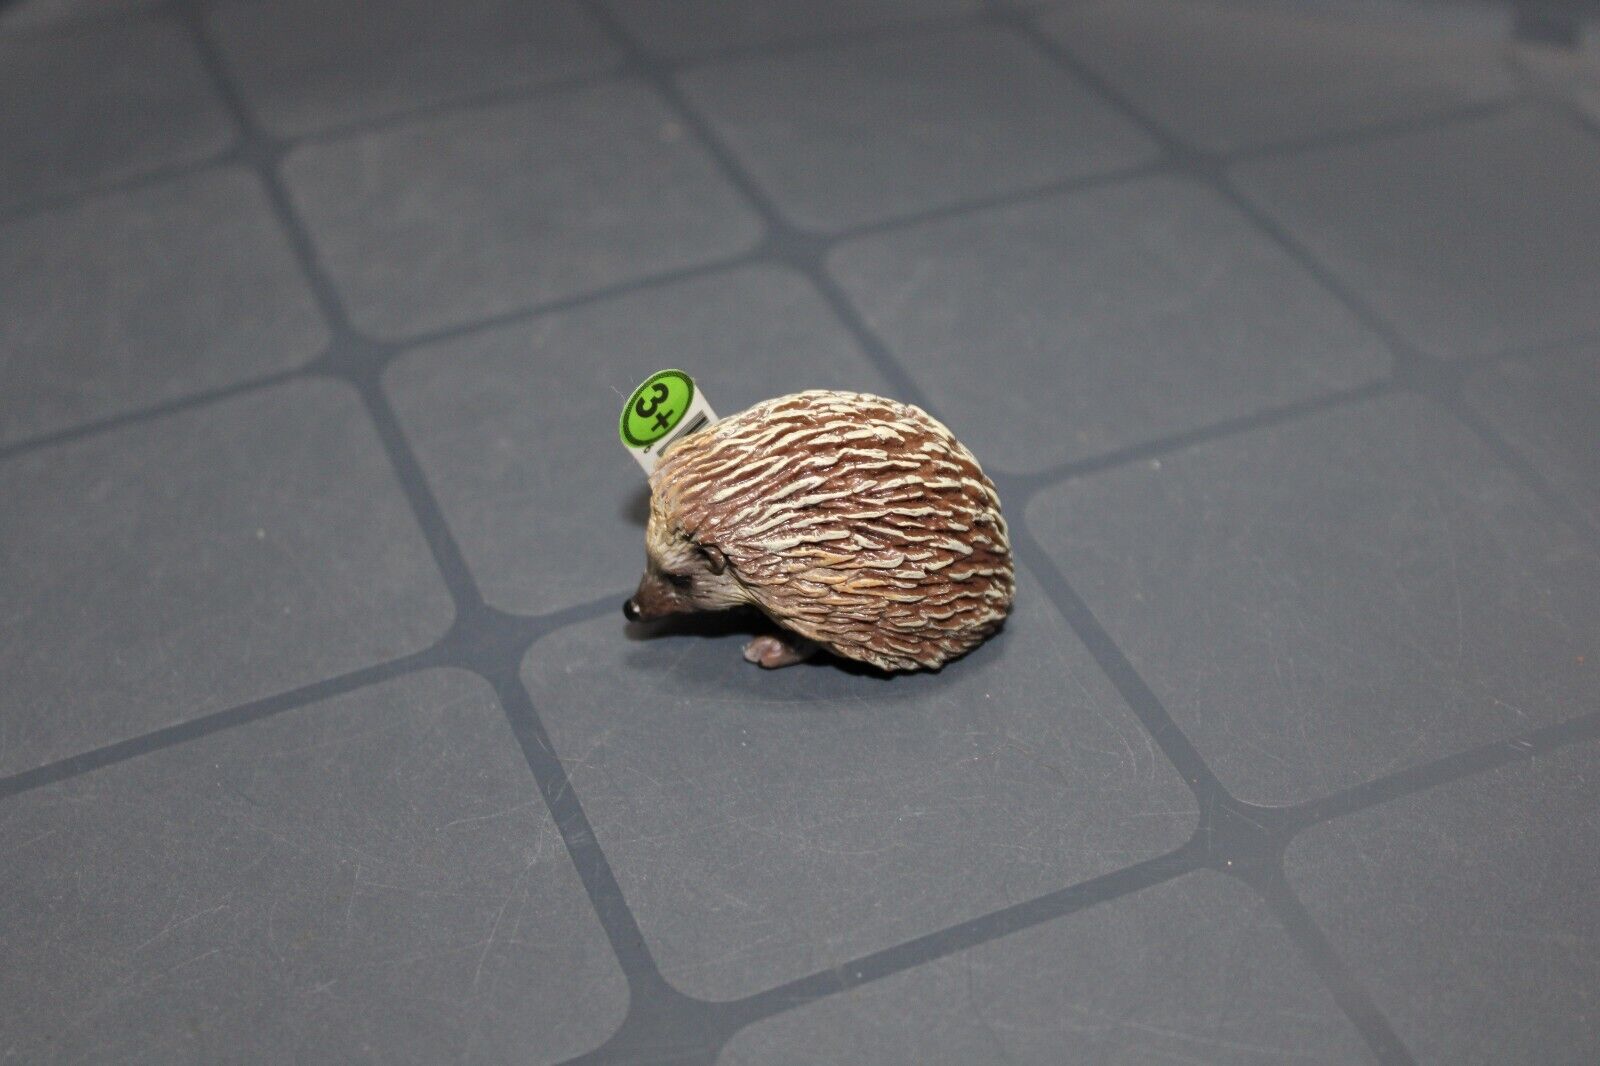 Schleich Hedgehog Small Animal Figure 14337 Retired  1\